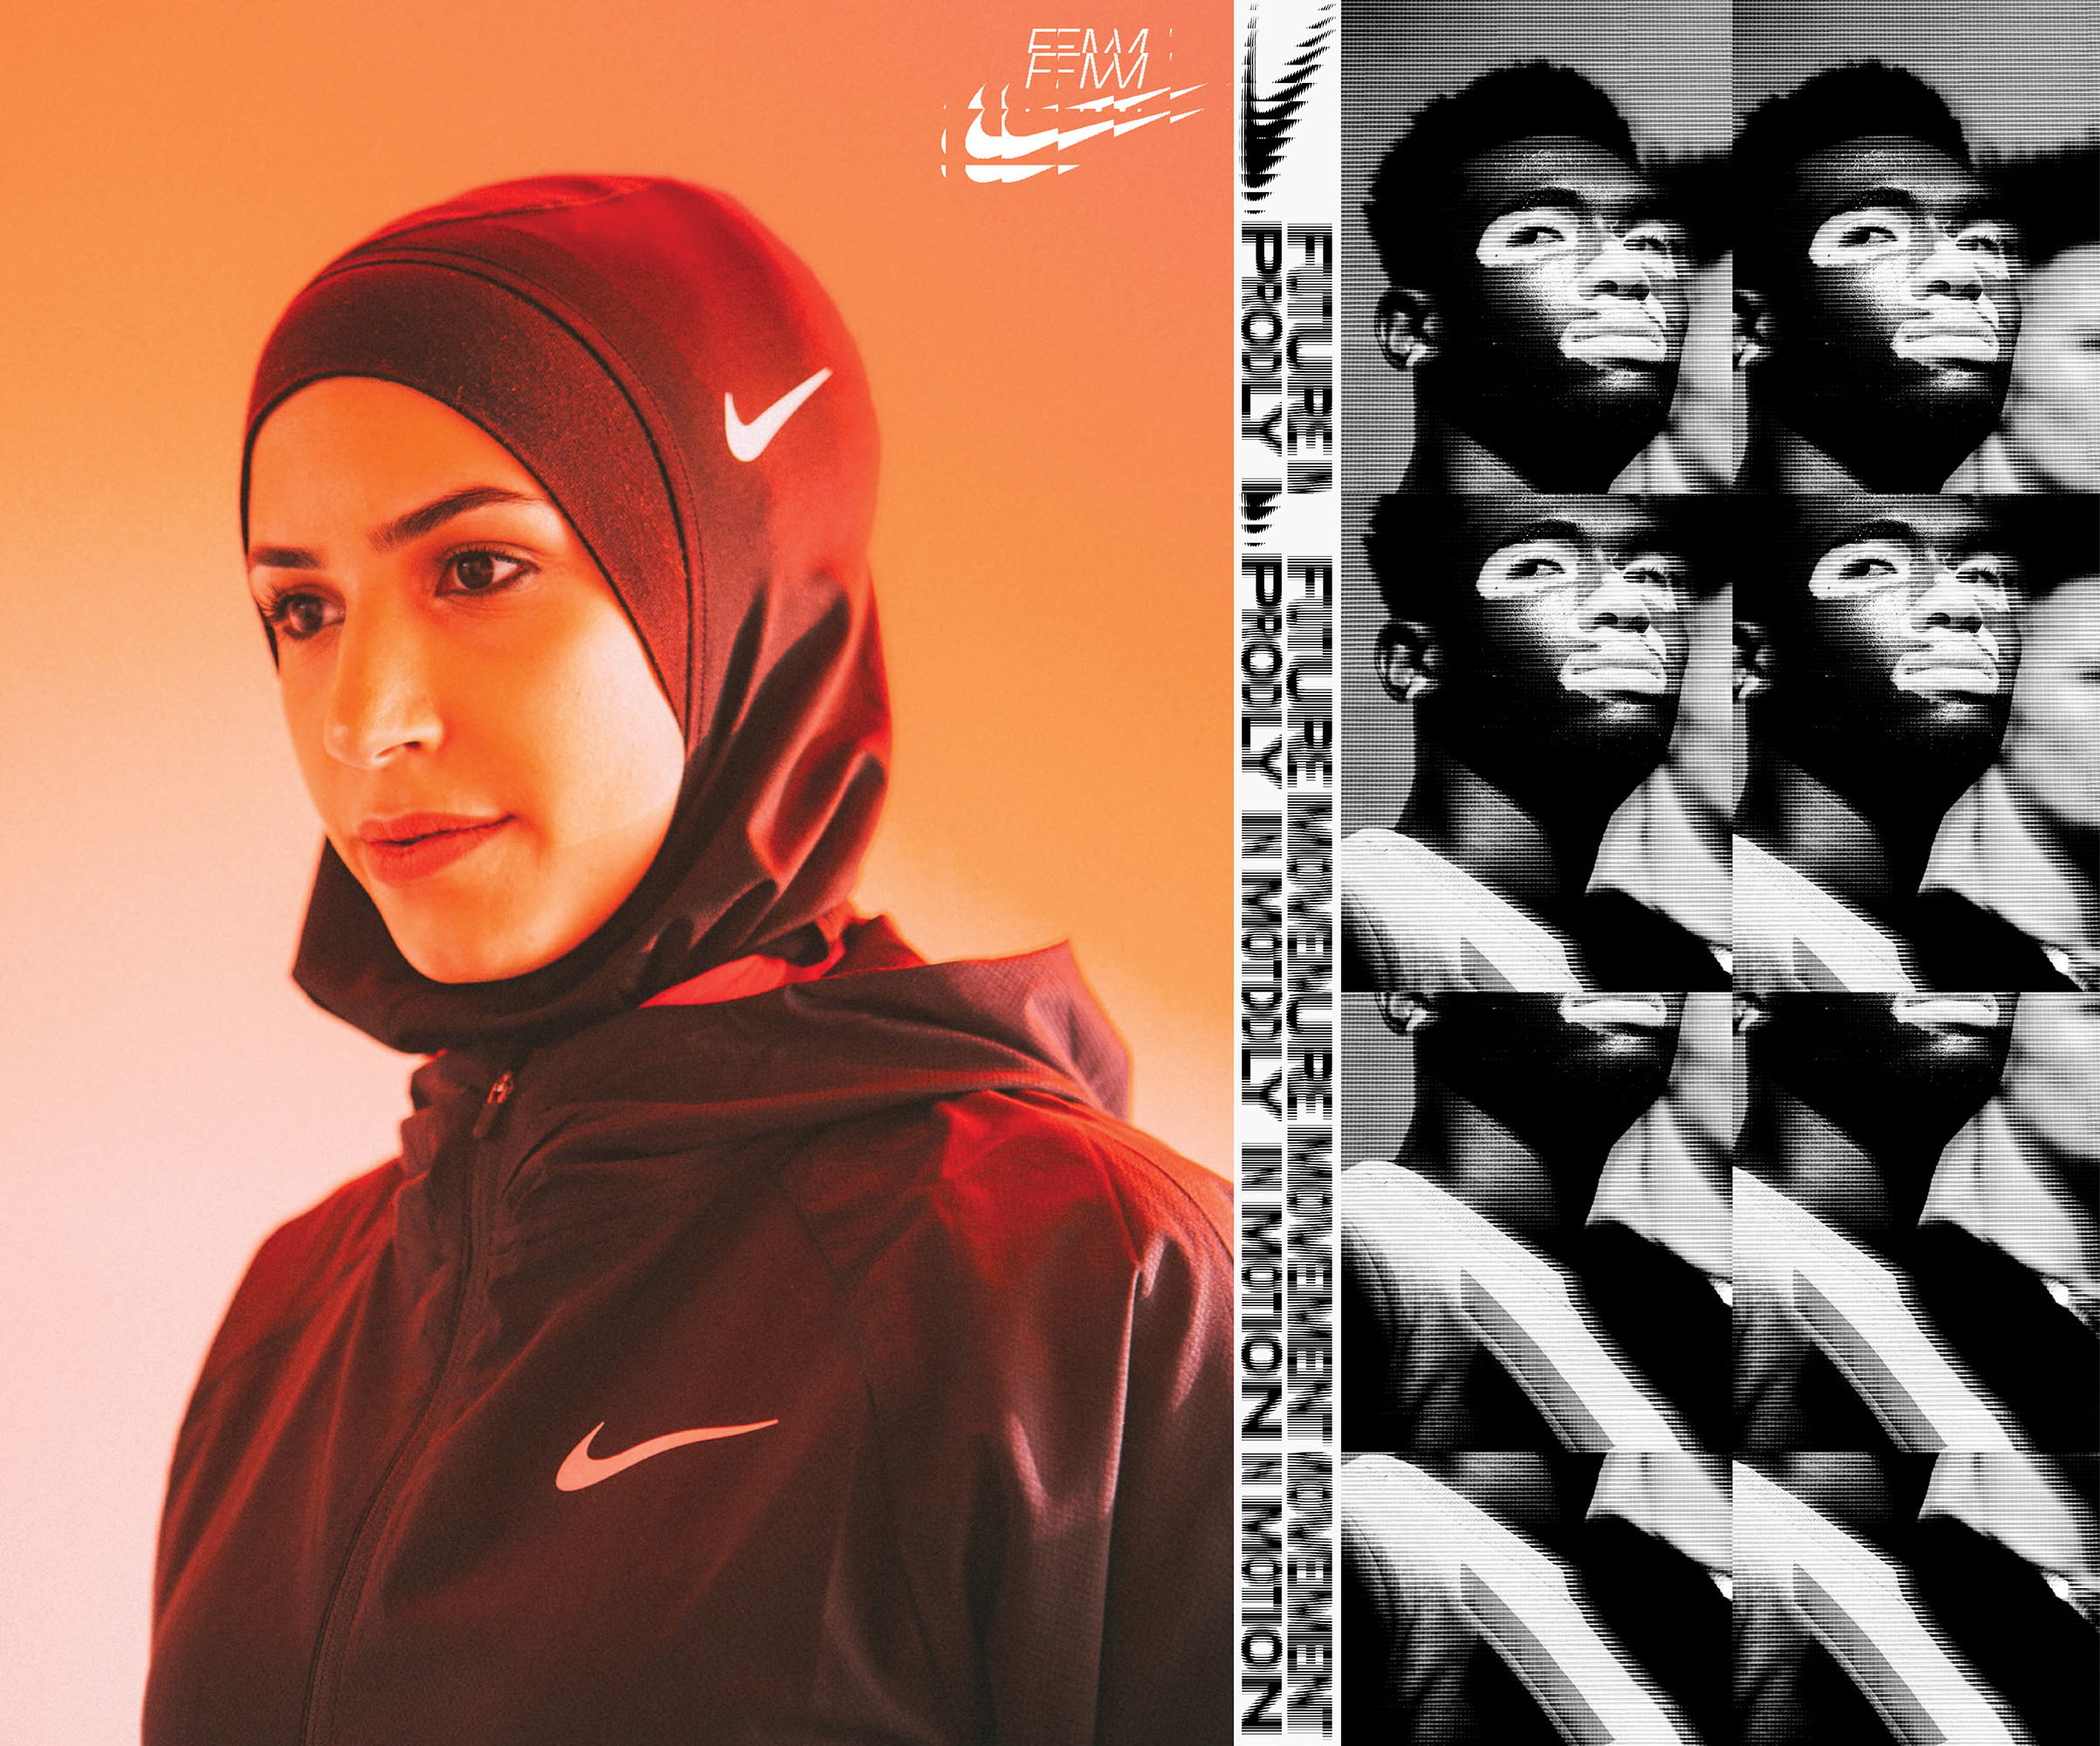 Nike Future Movement Campaign identity design.